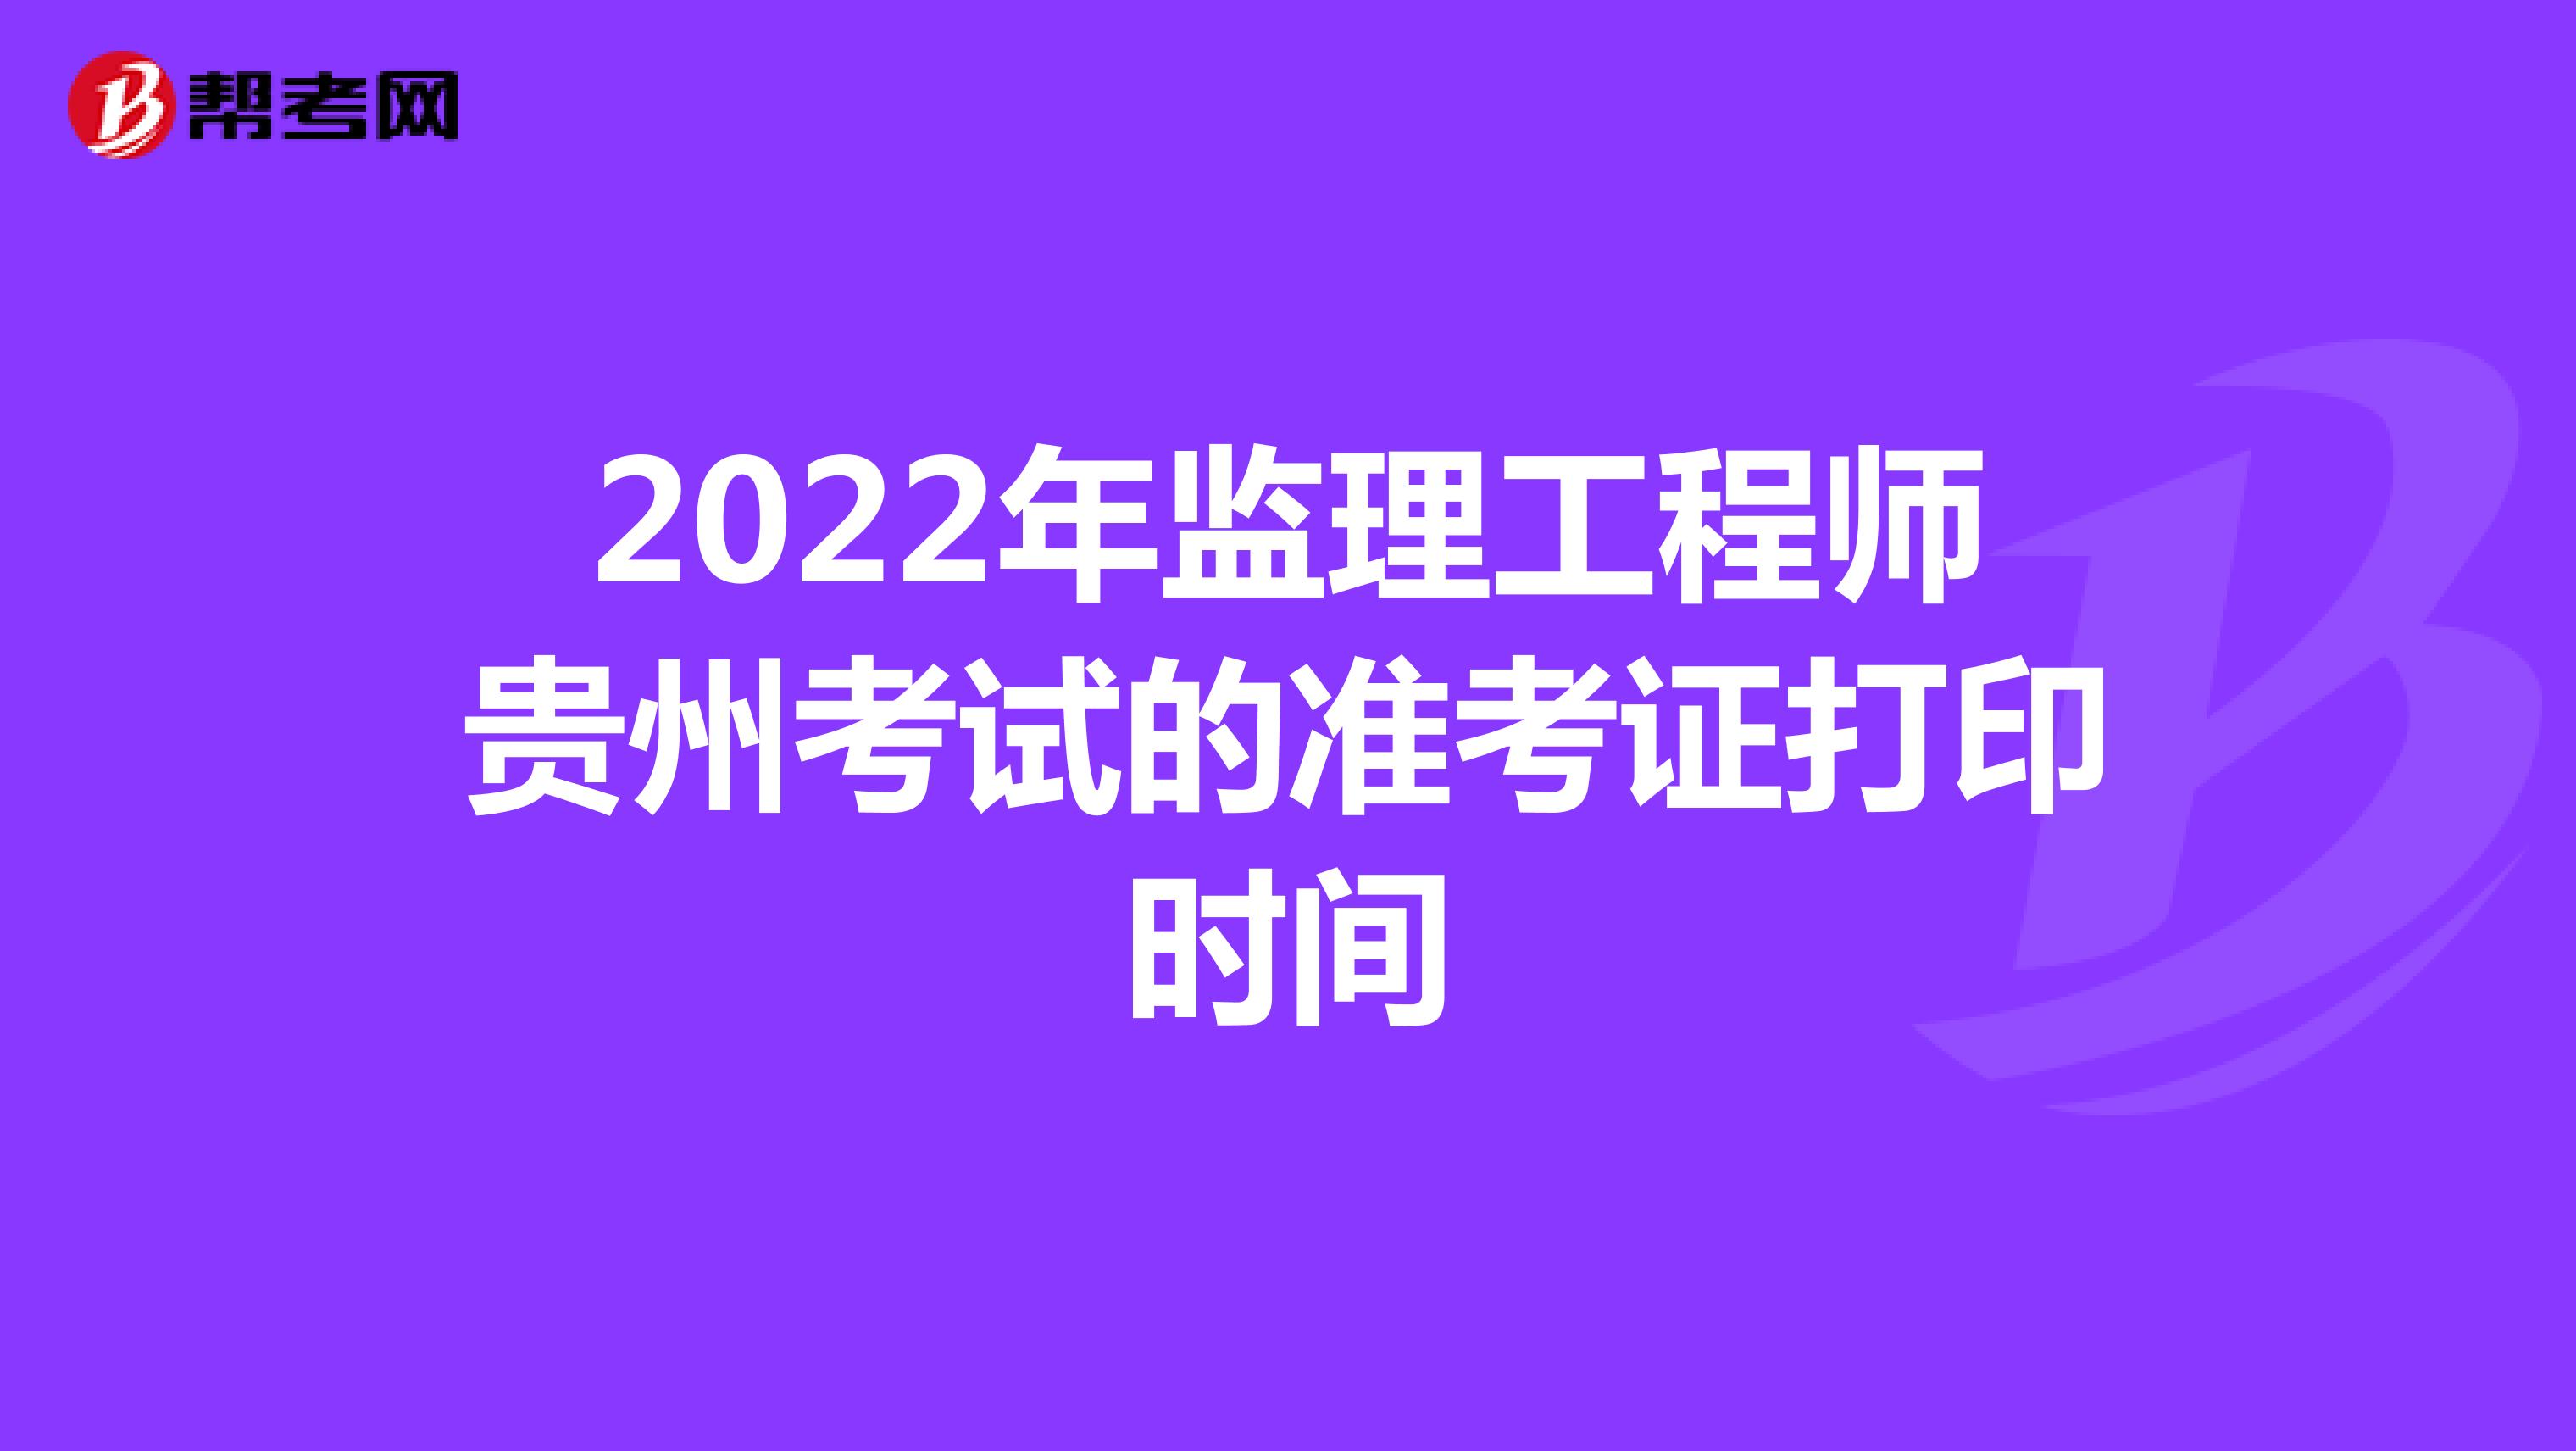 2022年监理工程师贵州考试的准考证打印时间